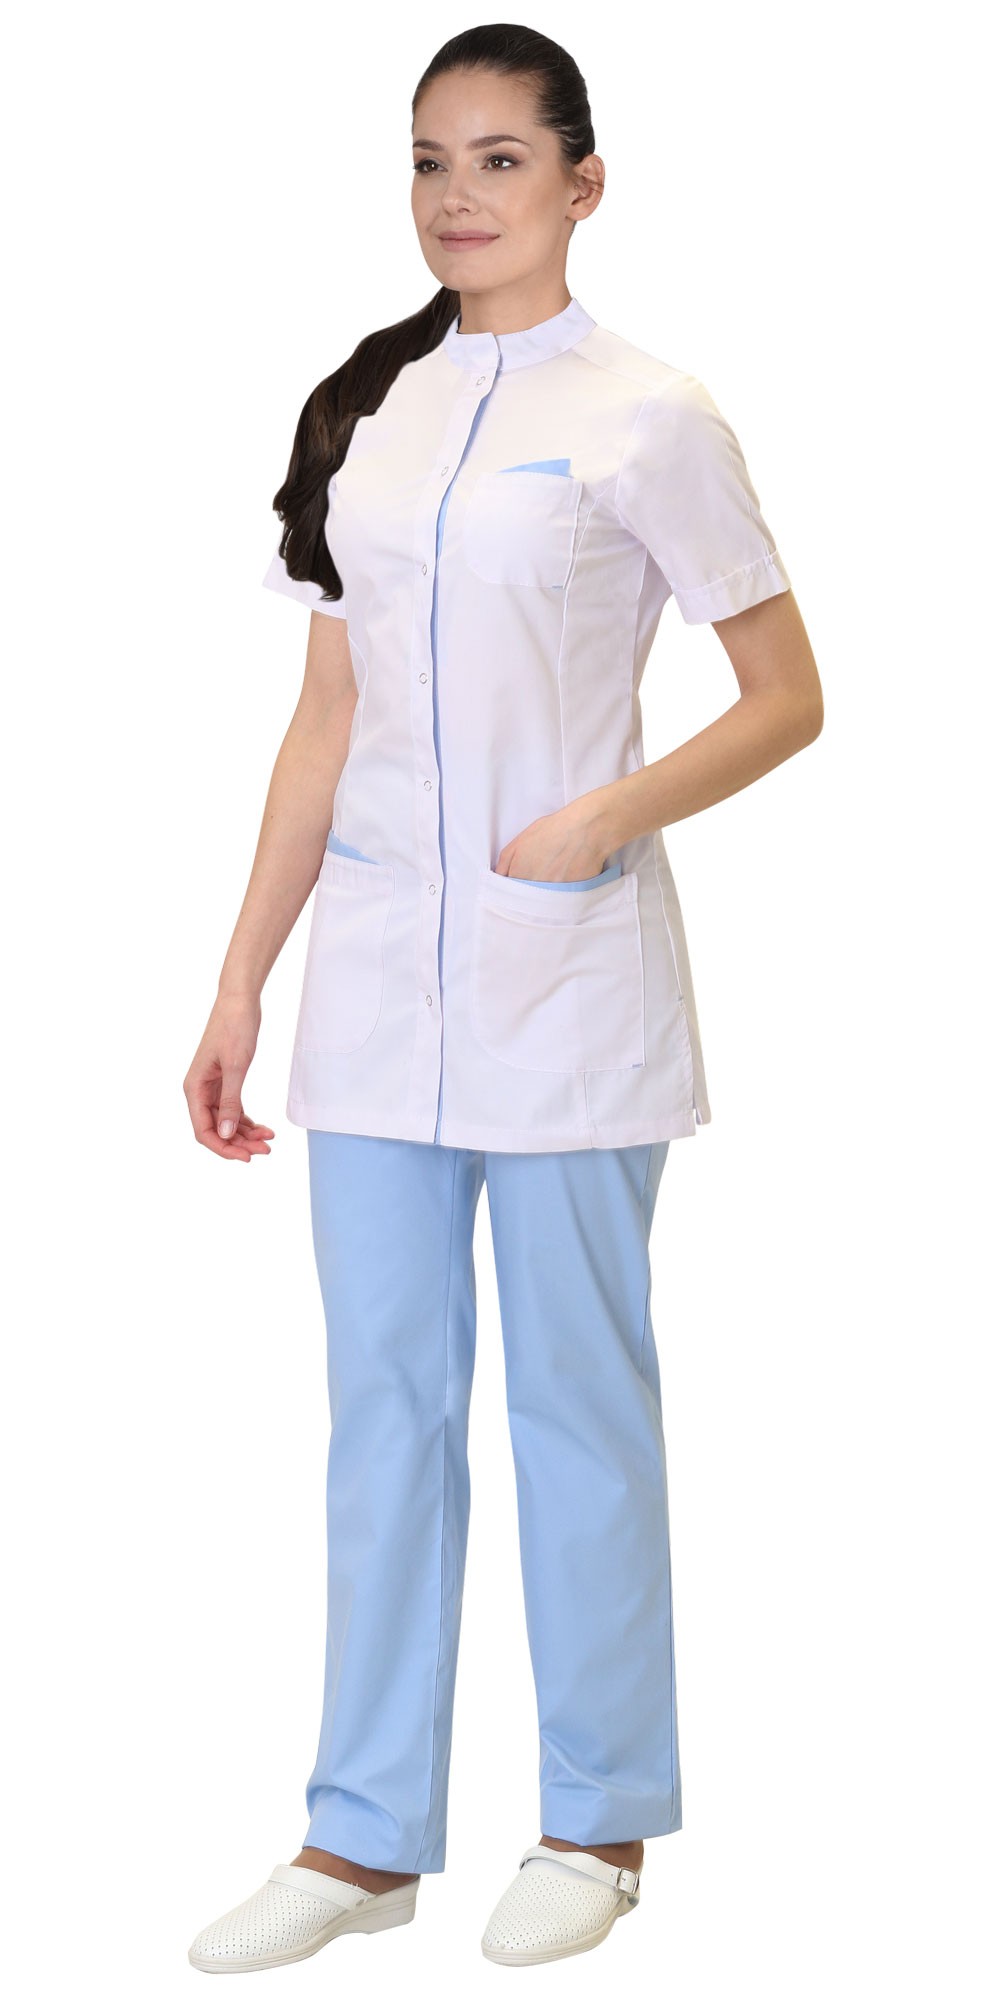 Mедицинский костюм “СИРИУС-ЭВИТА” женский белый с голубым Артикул: 03619